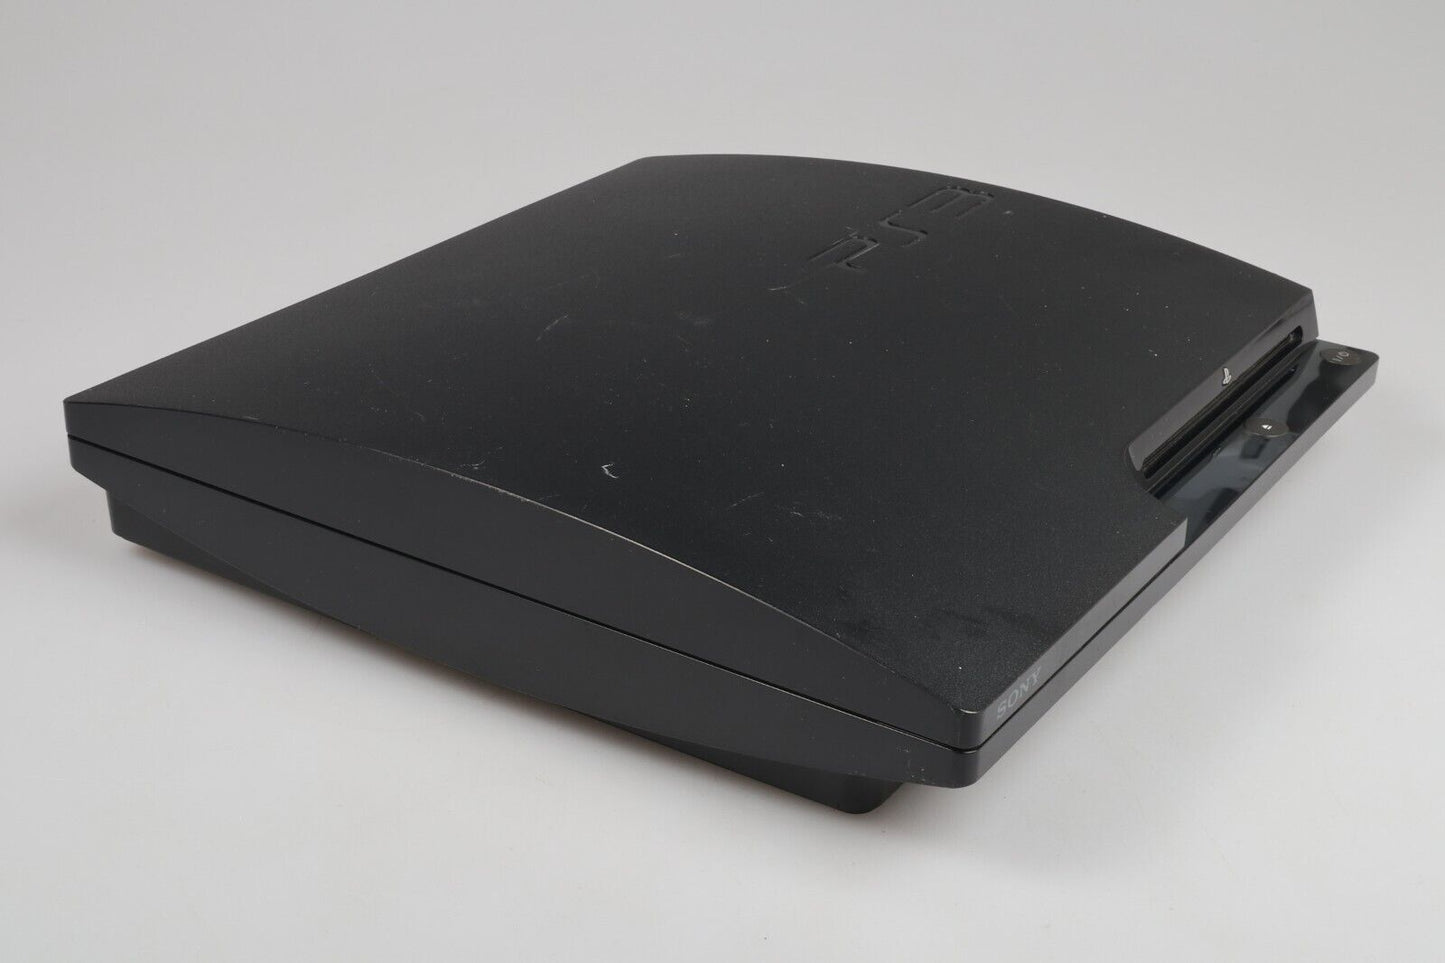 Playstation 3 | Console CECH-2004B 250GB Bundle